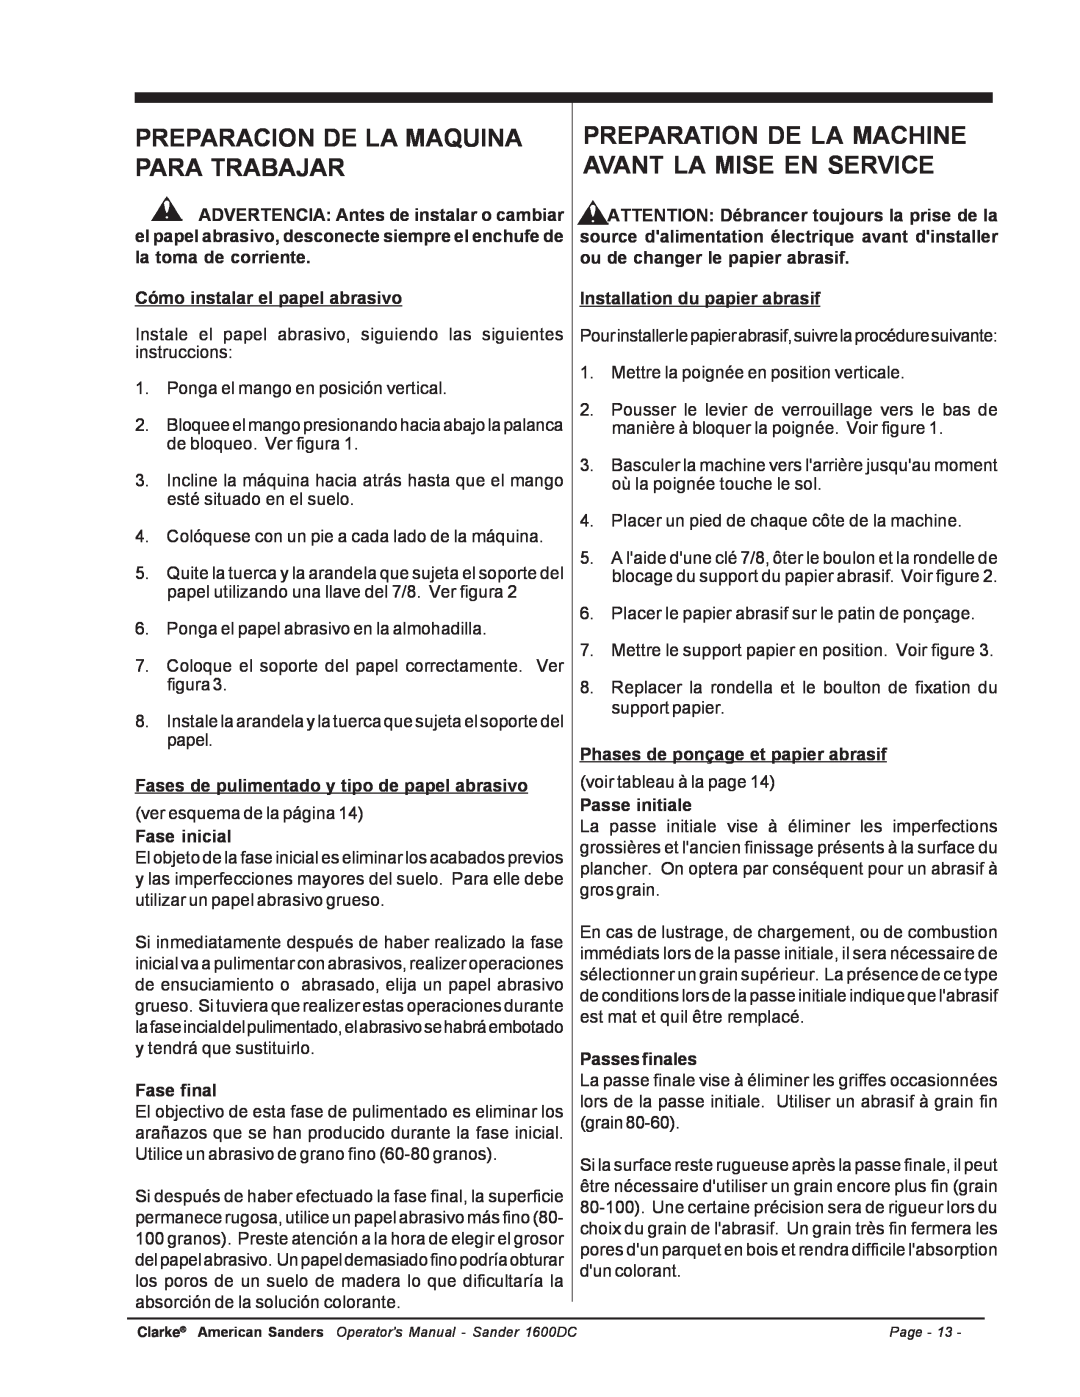 Nilfisk-ALTO C.A.V. 15 manual Preparacion De La Maquina Para Trabajar 